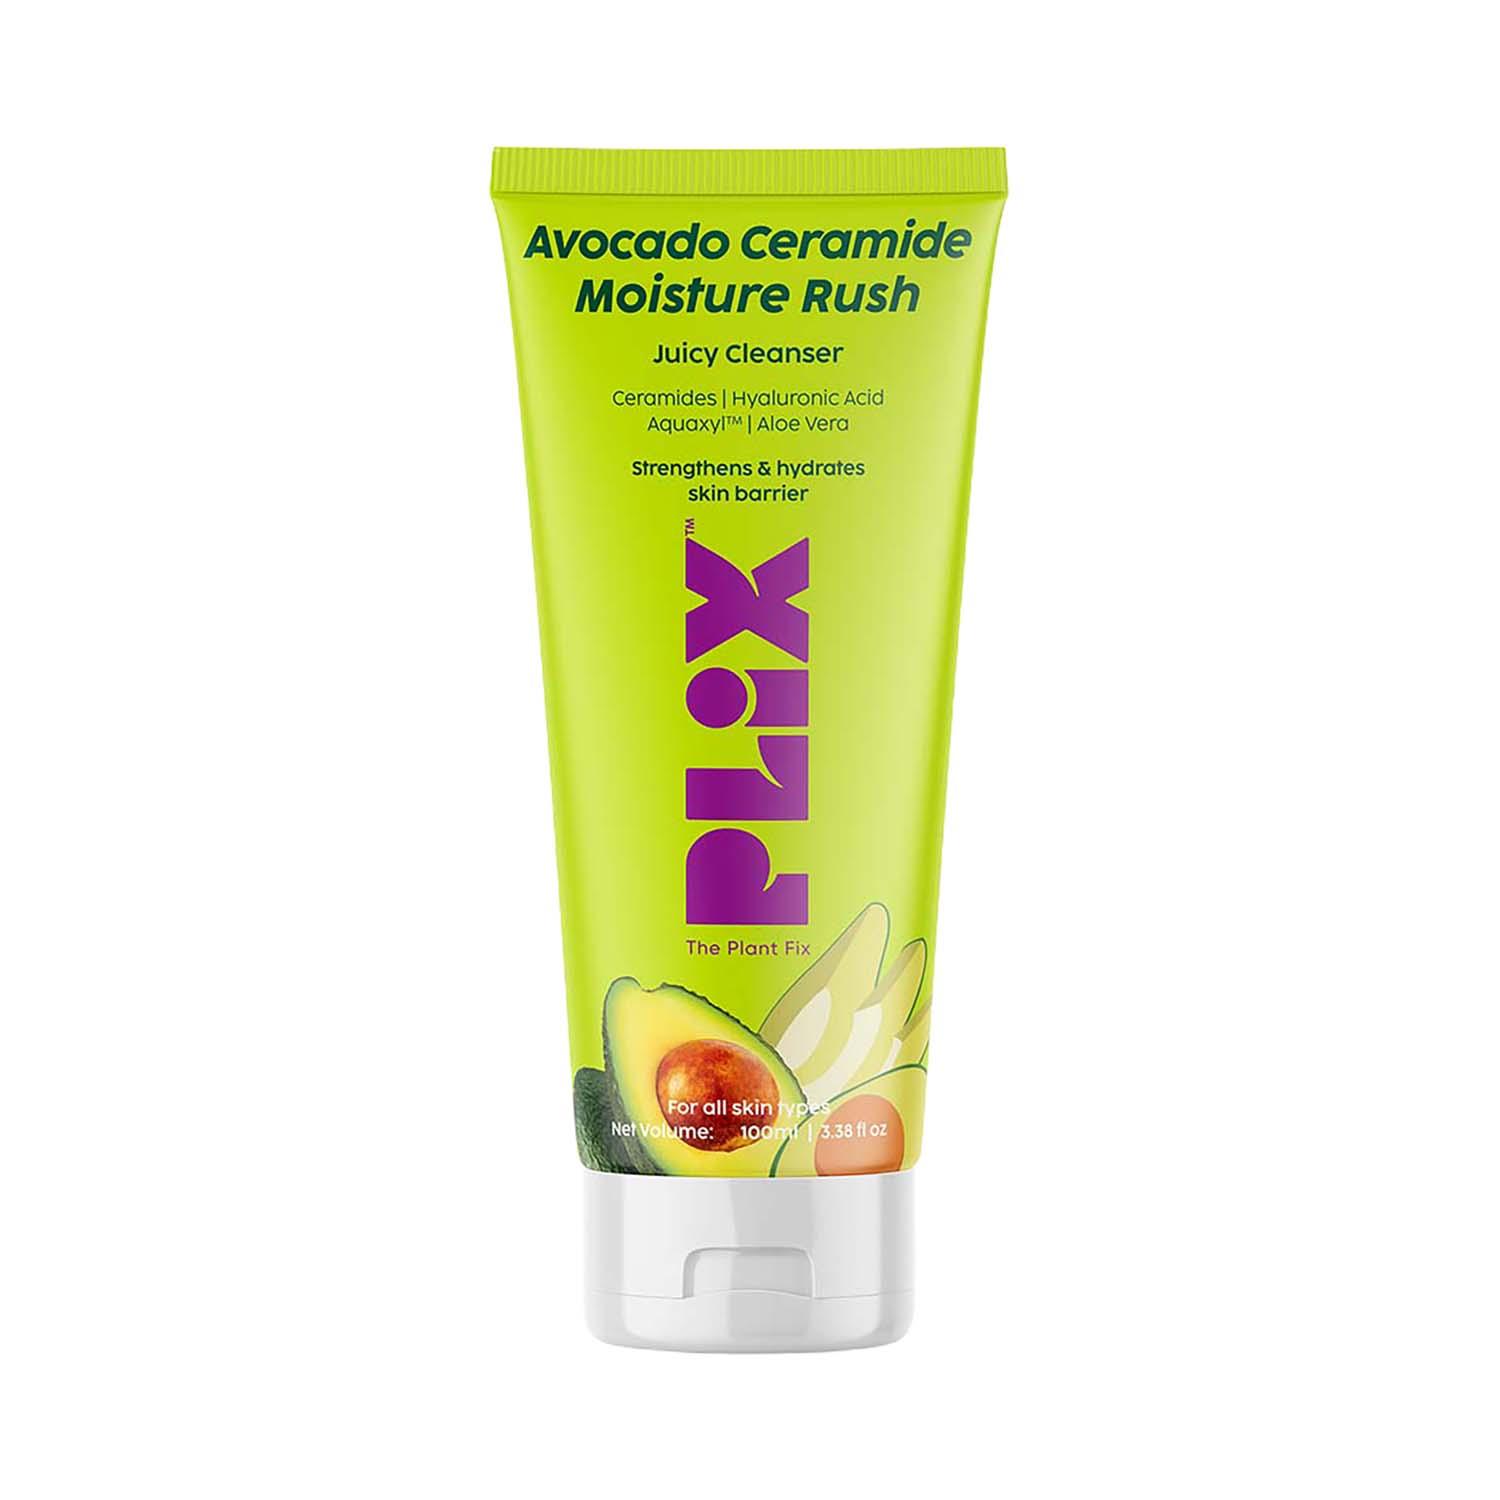 Plix The Plant Fix | Plix The Plant Fix Avocado Ceramide Moisture Rush Juicy Cleanser (100 ml)